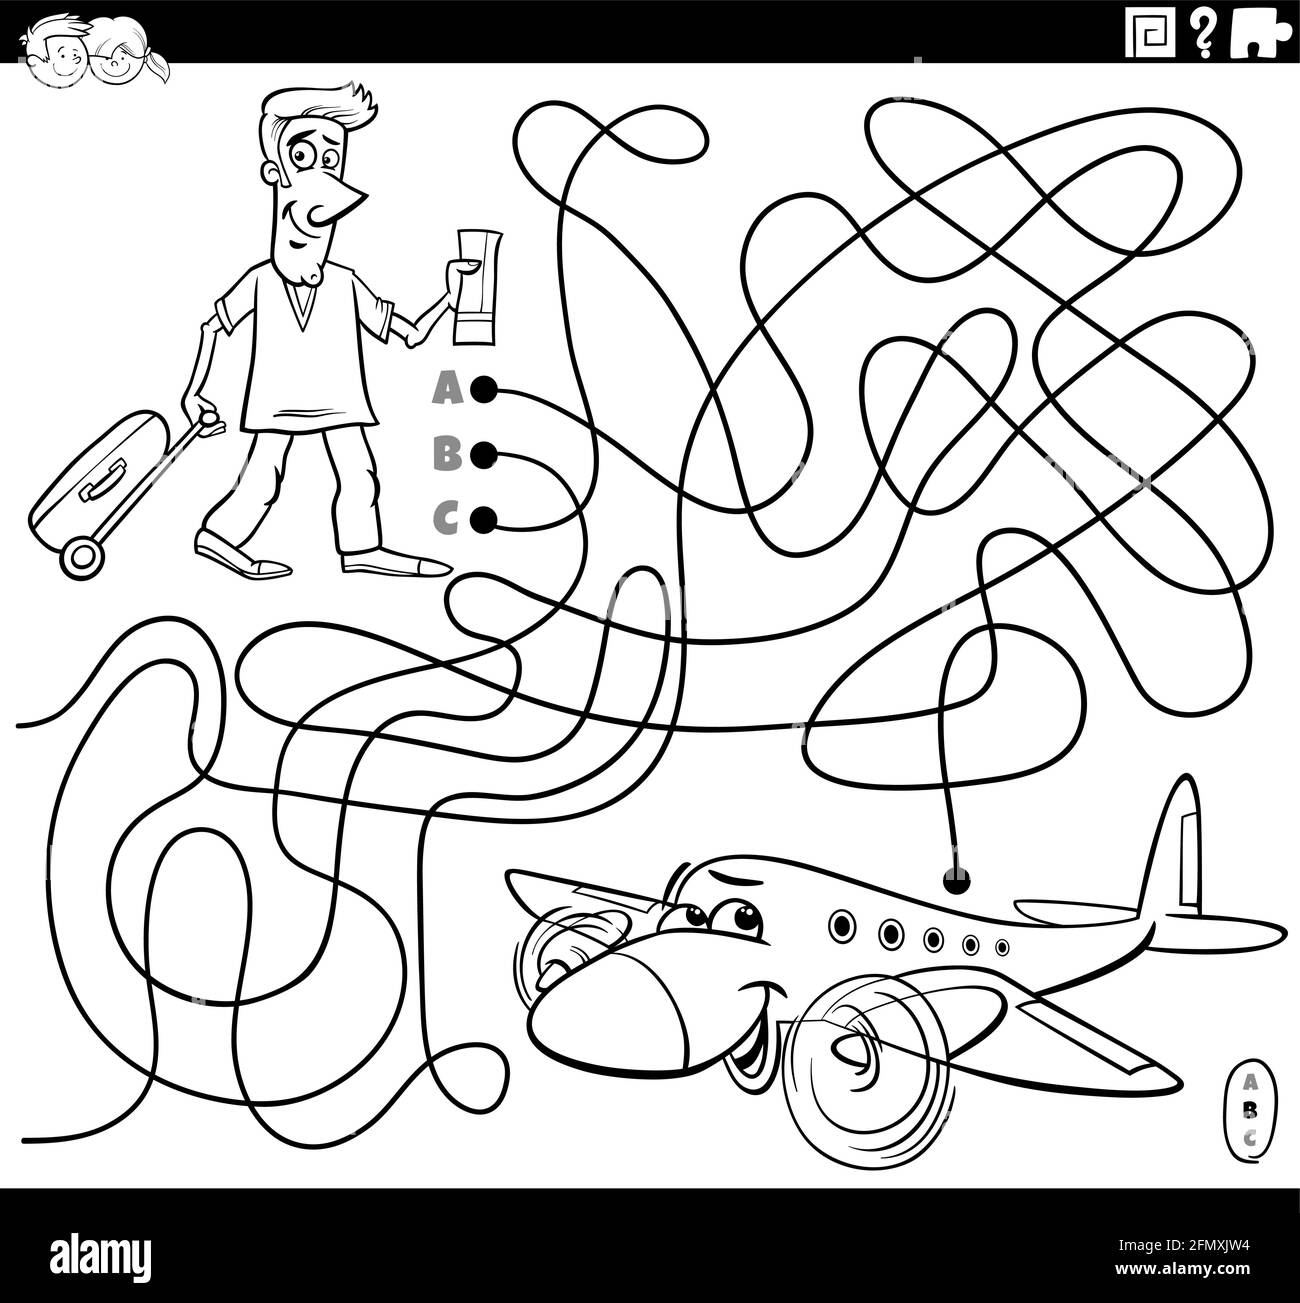 Dessin animé noir et blanc illustration de lignes labyrinthe jeu de puzzle  avec un homme avec un billet et une valise à emporter et la page du livre  de coloriage de l'avion